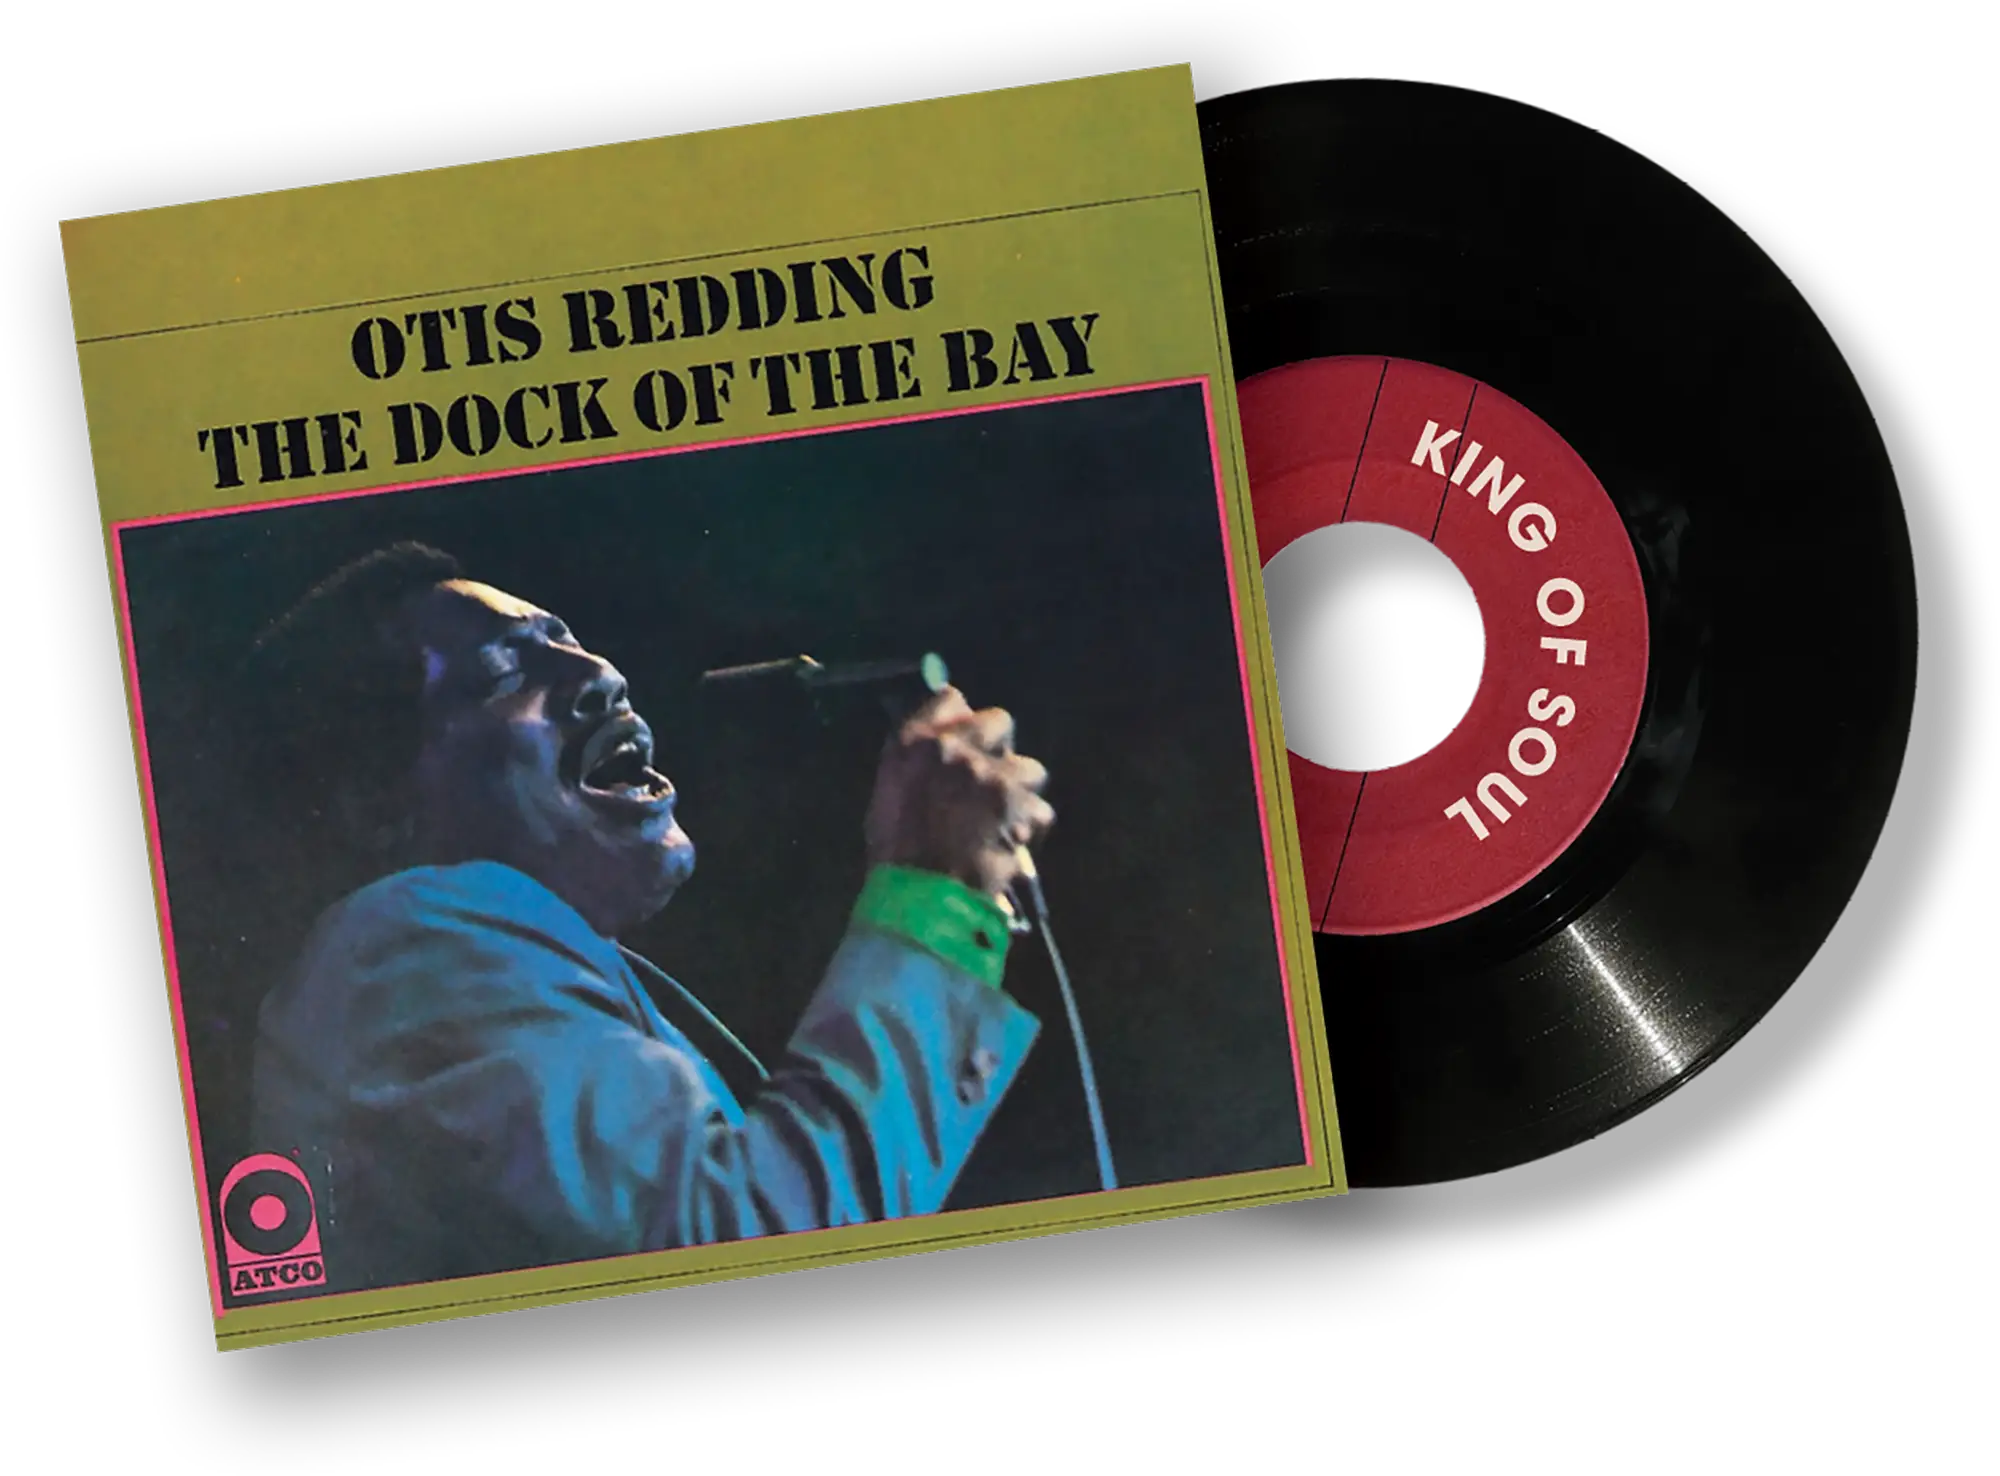 Otis Redding vinyl and cover art